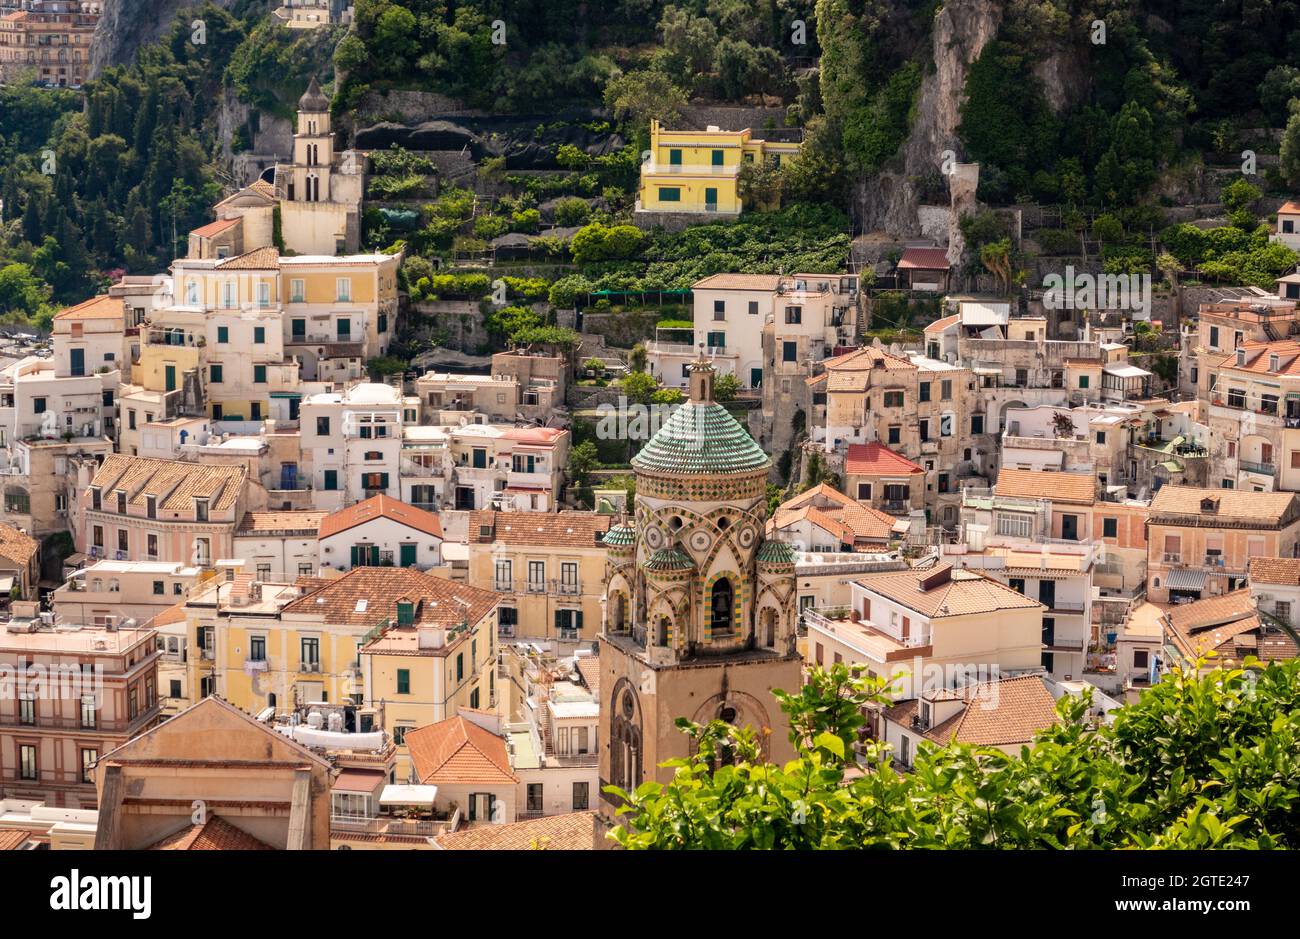 The town of Amalfi on the Amalfi Coast, Salerno, Campania, Italy Stock Photo